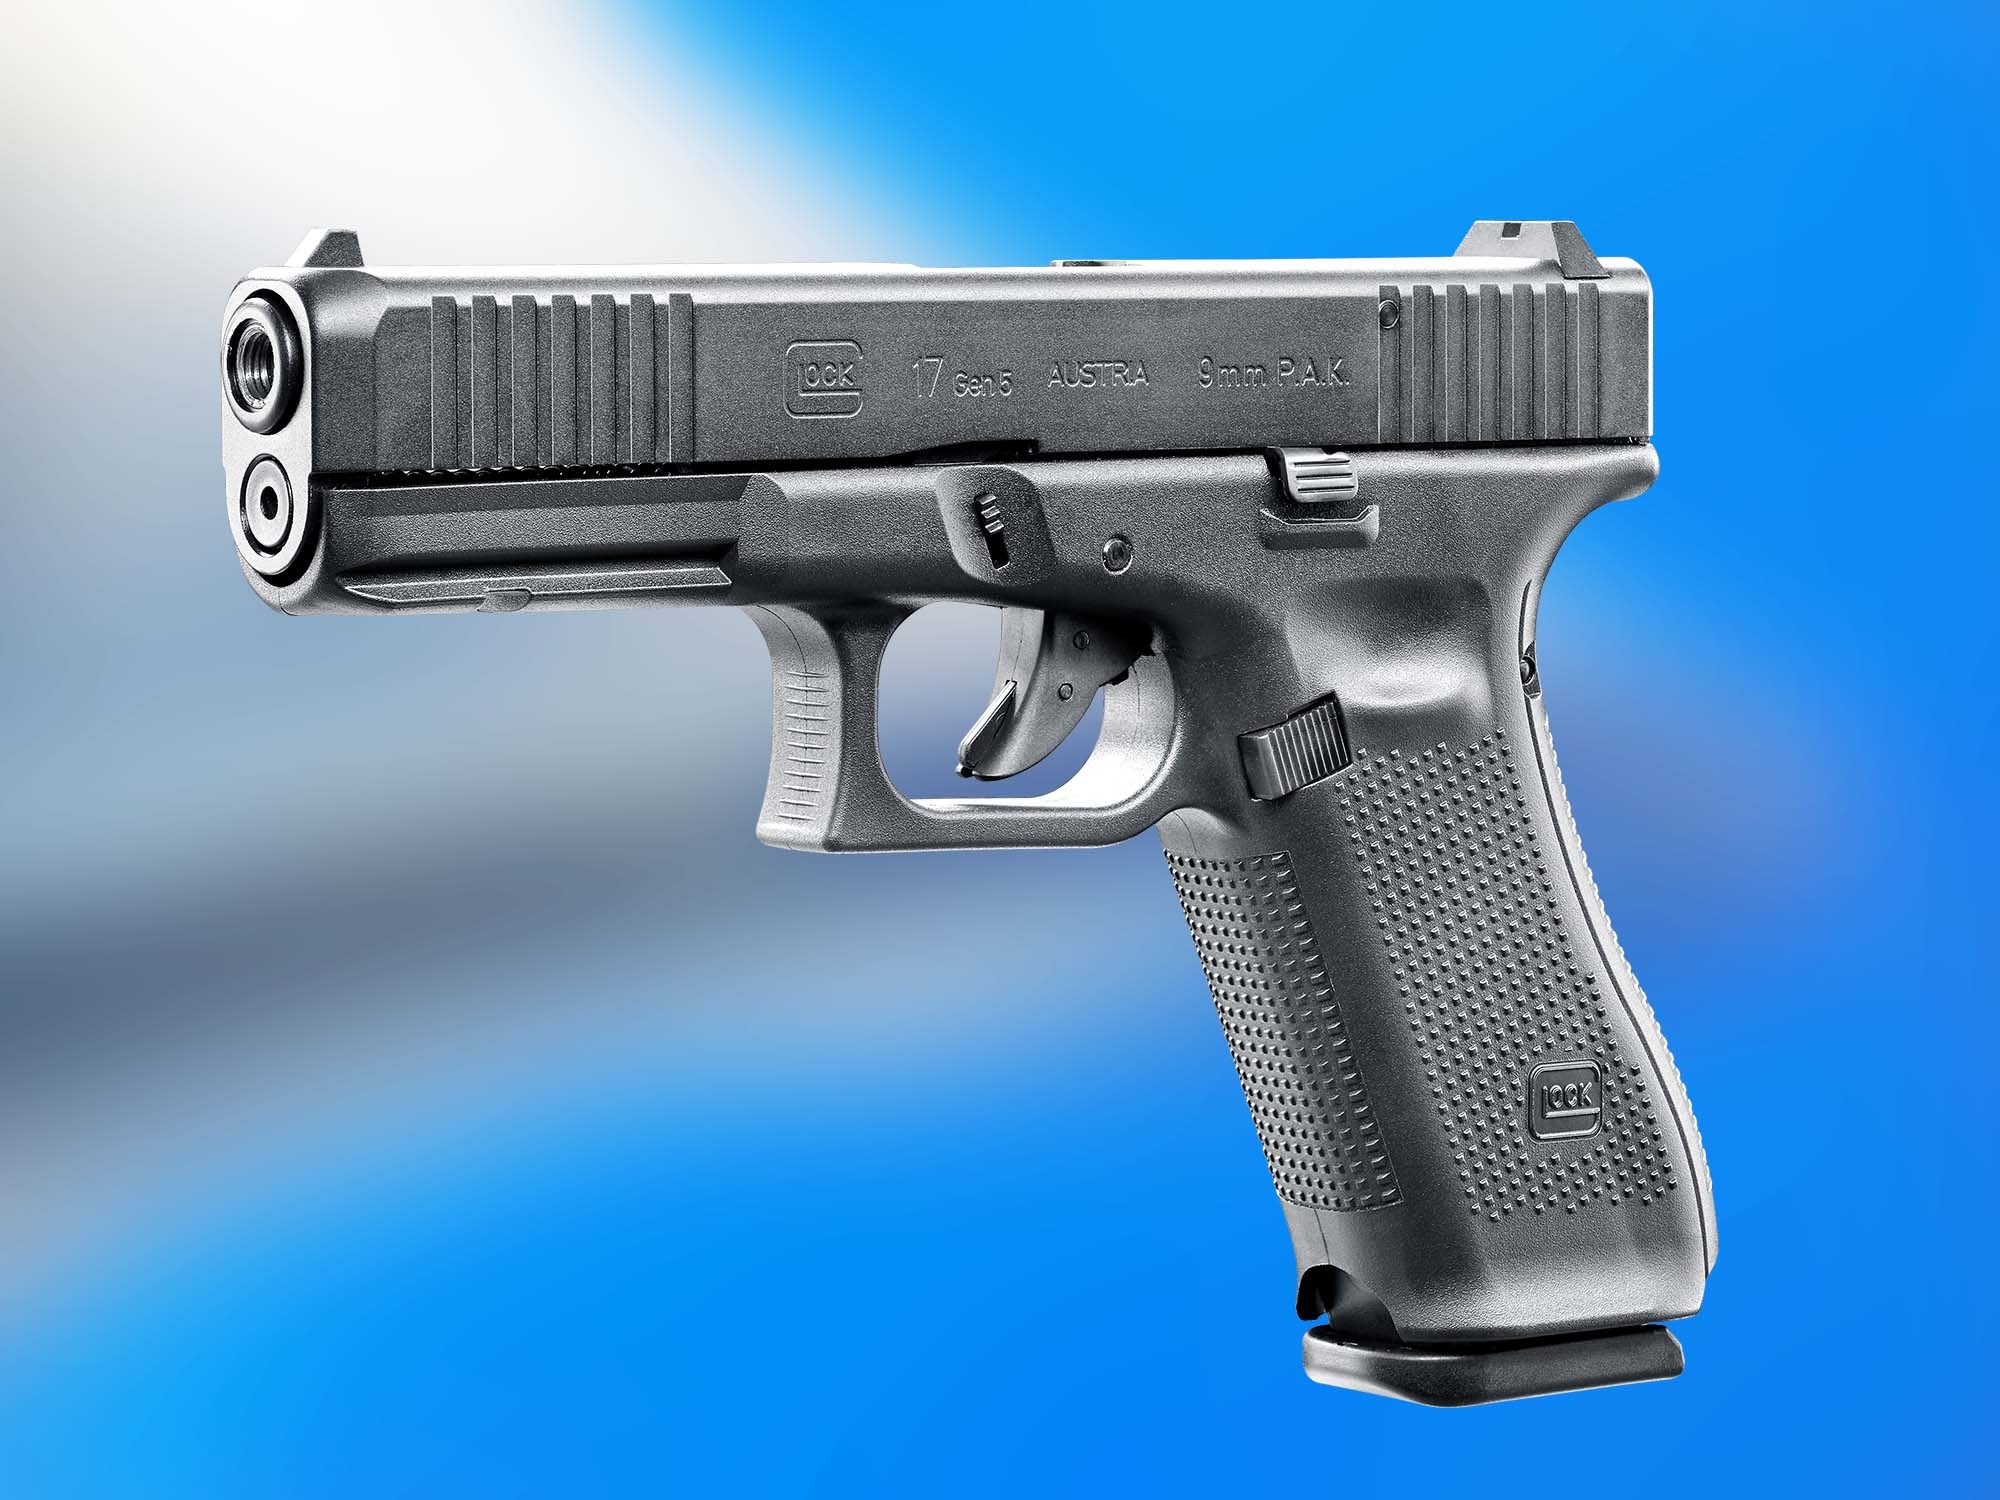 Here's the Full Reveal of the New Glock Gen5 Pistol